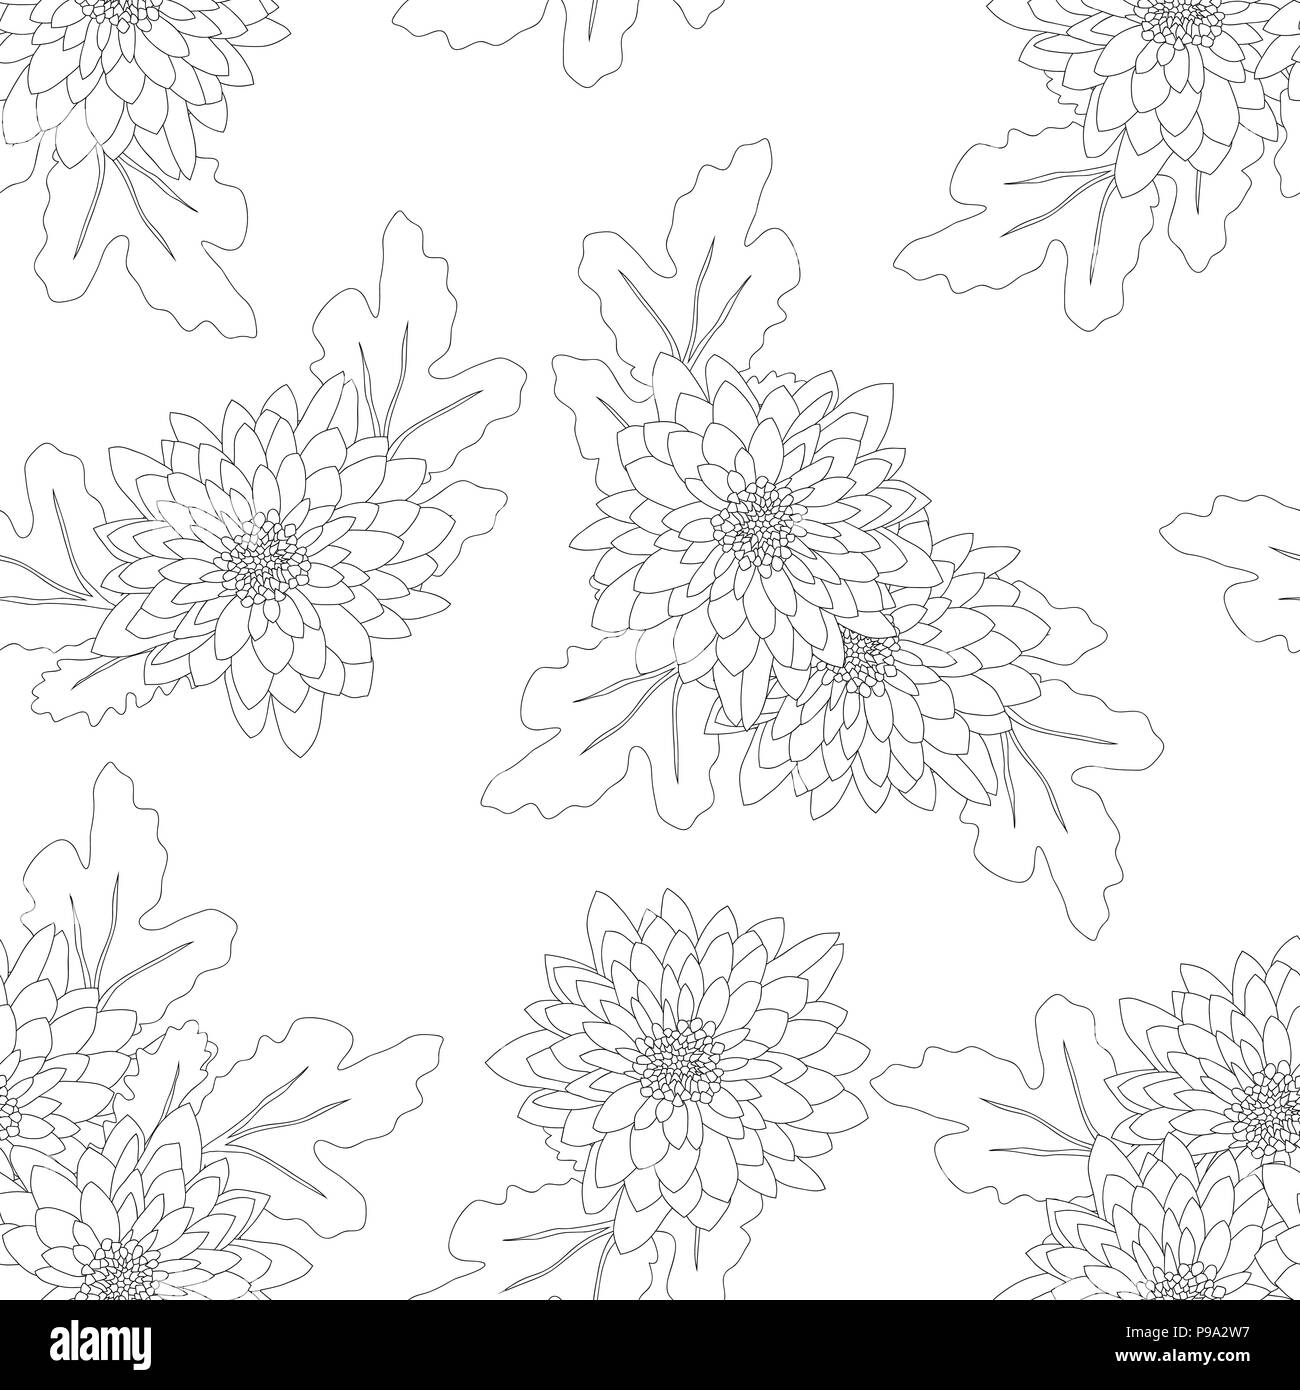 Chrysanthemum on White Background. Vector Illustration. Stock Vector